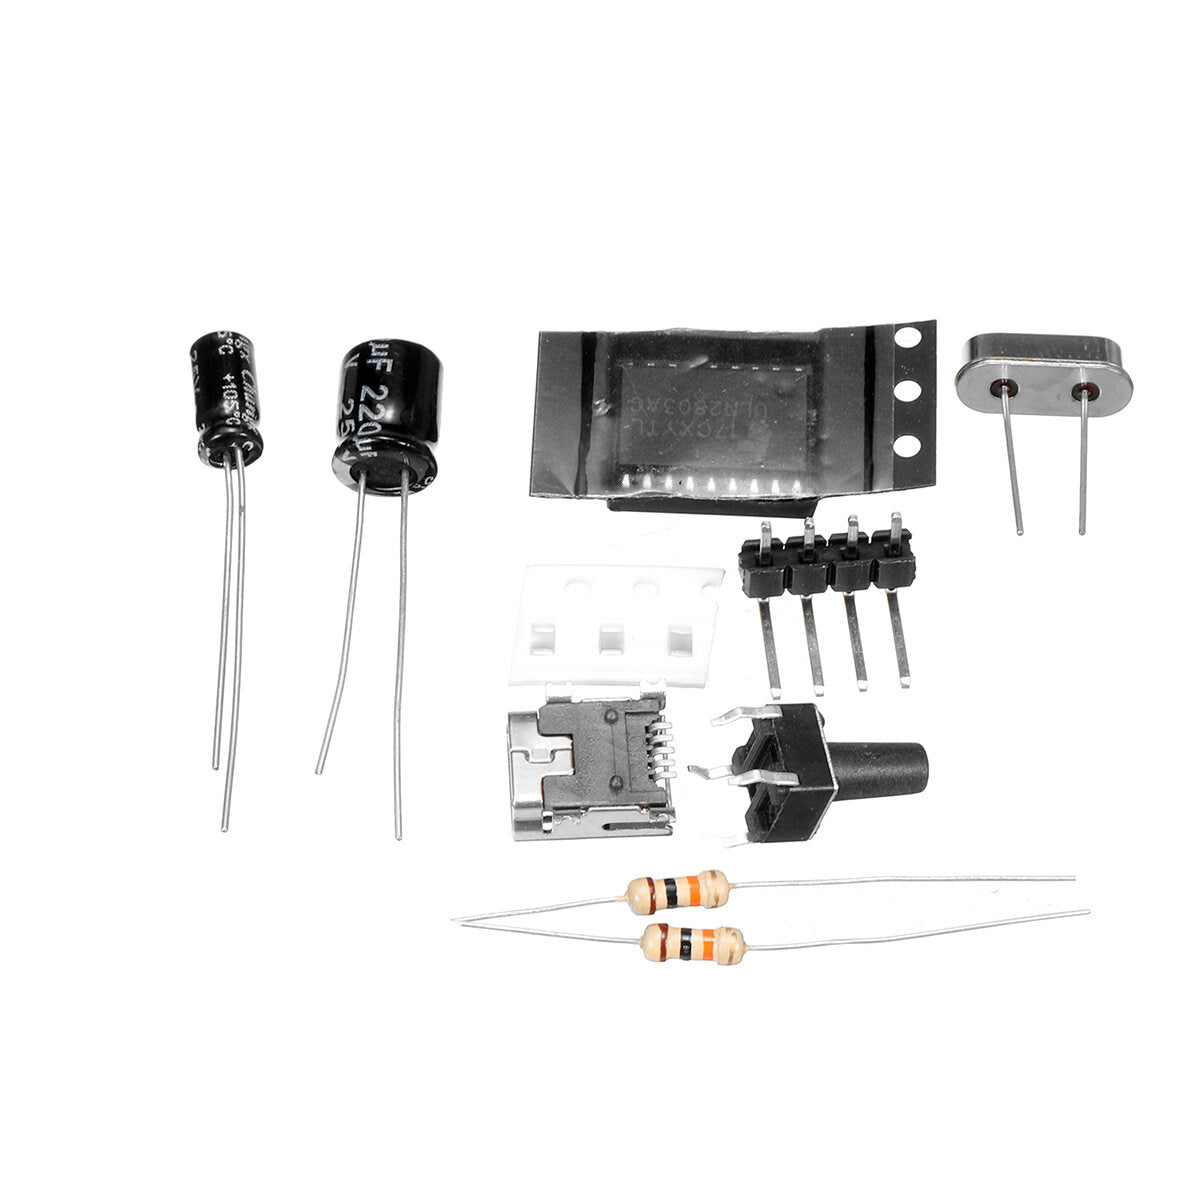 dhz full-color rgb hartvormige led knipperende kit elektronische kit